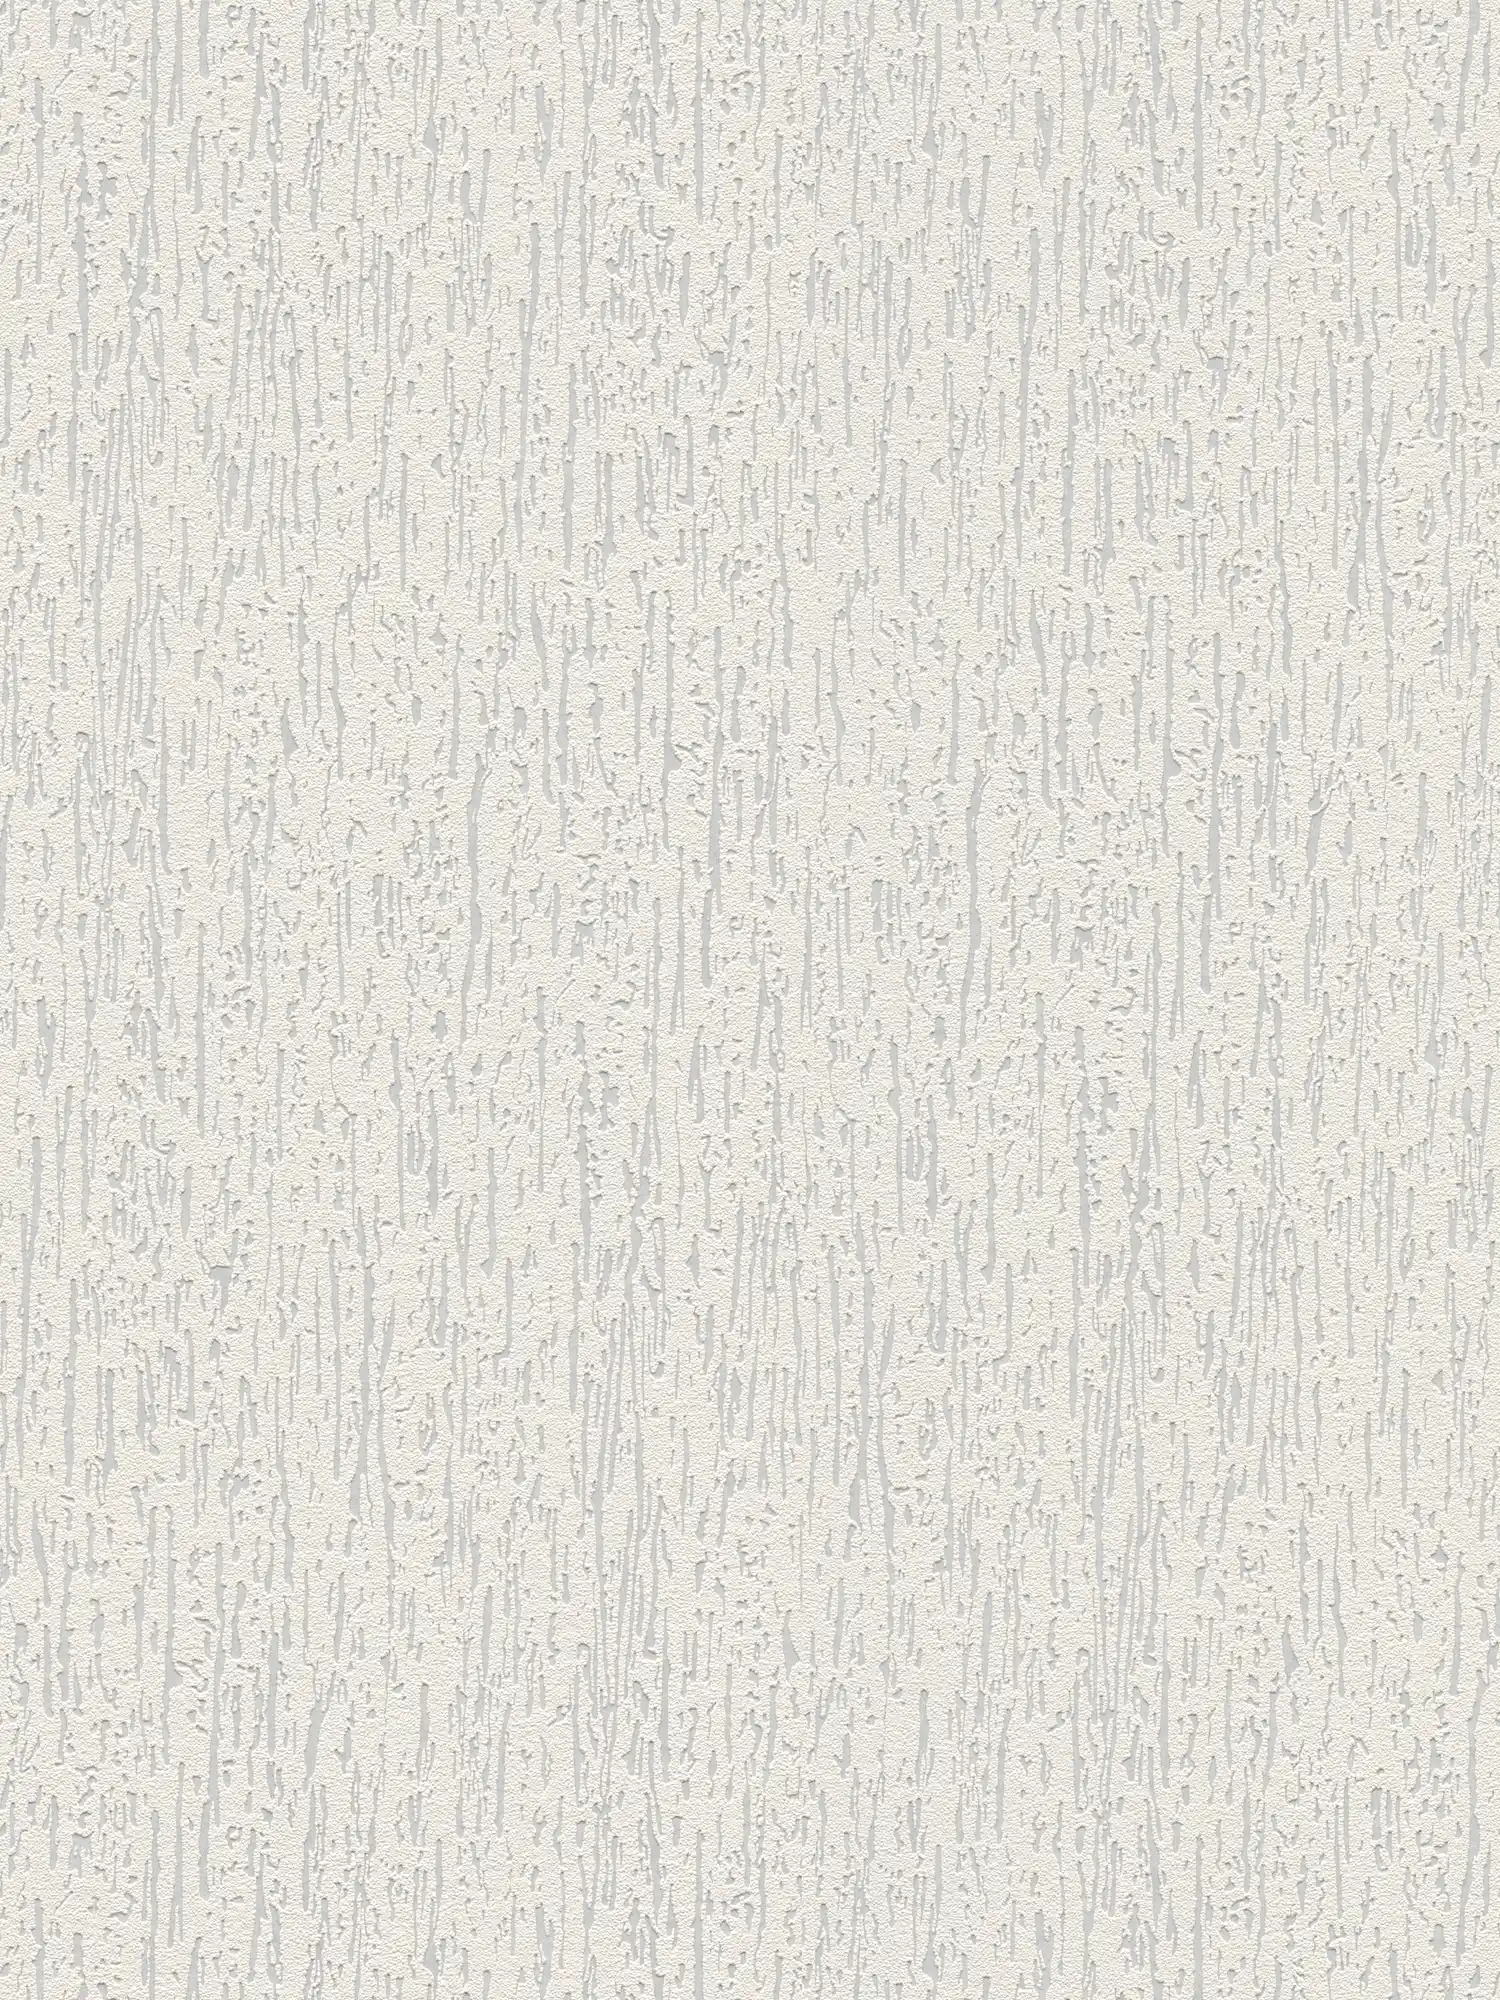 Carta da parati verniciabile in tessuto non tessuto con aspetto grezzo - verniciabile, bianco
